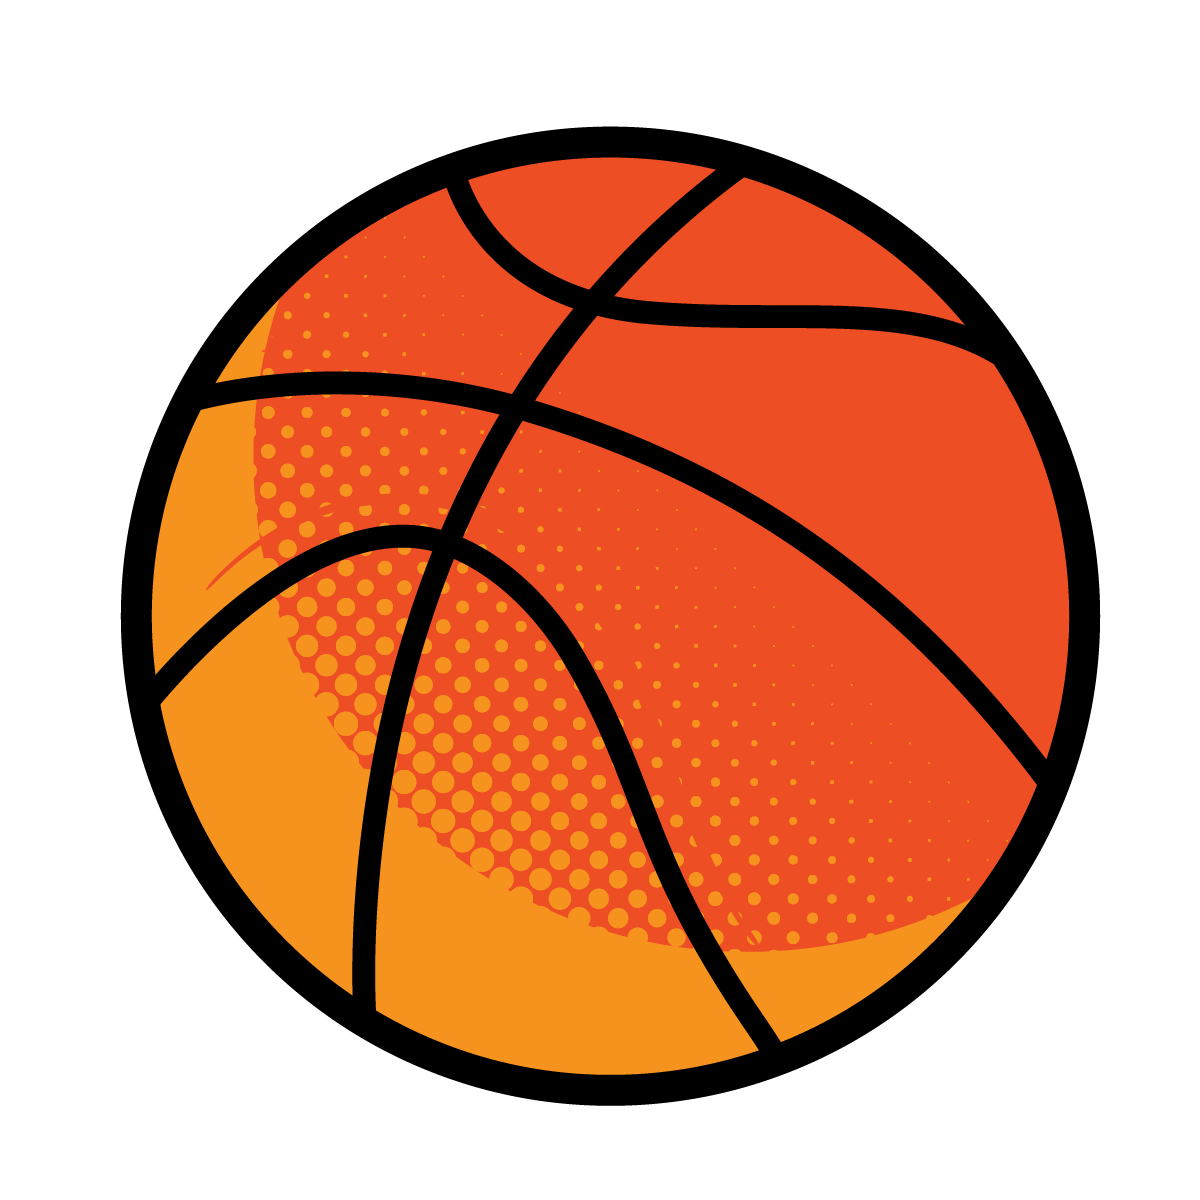 A basketball icon. 